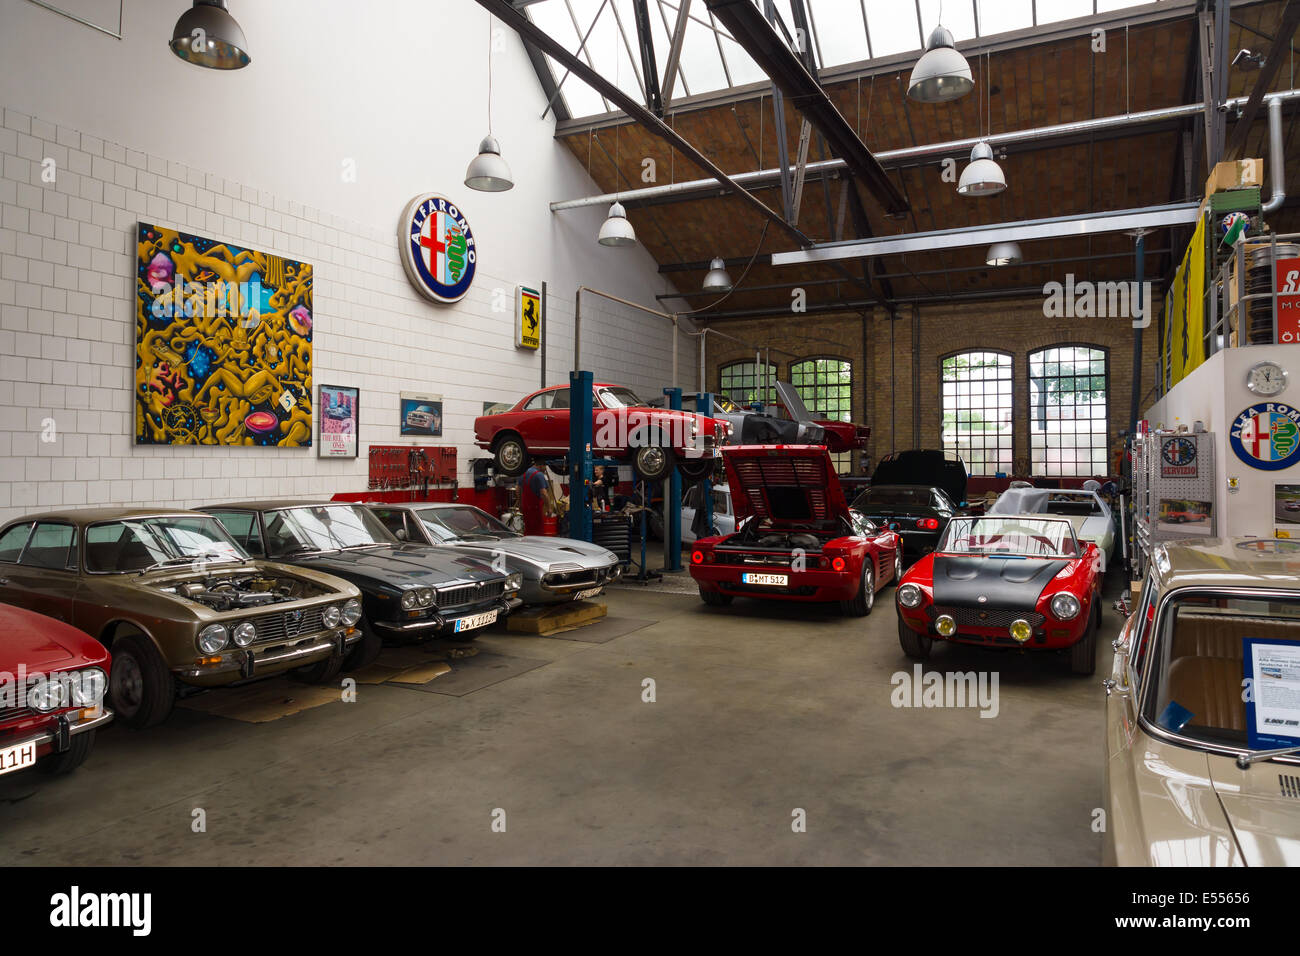 Stahl Garage - Oldtimer Werkstatt in München für US Cars